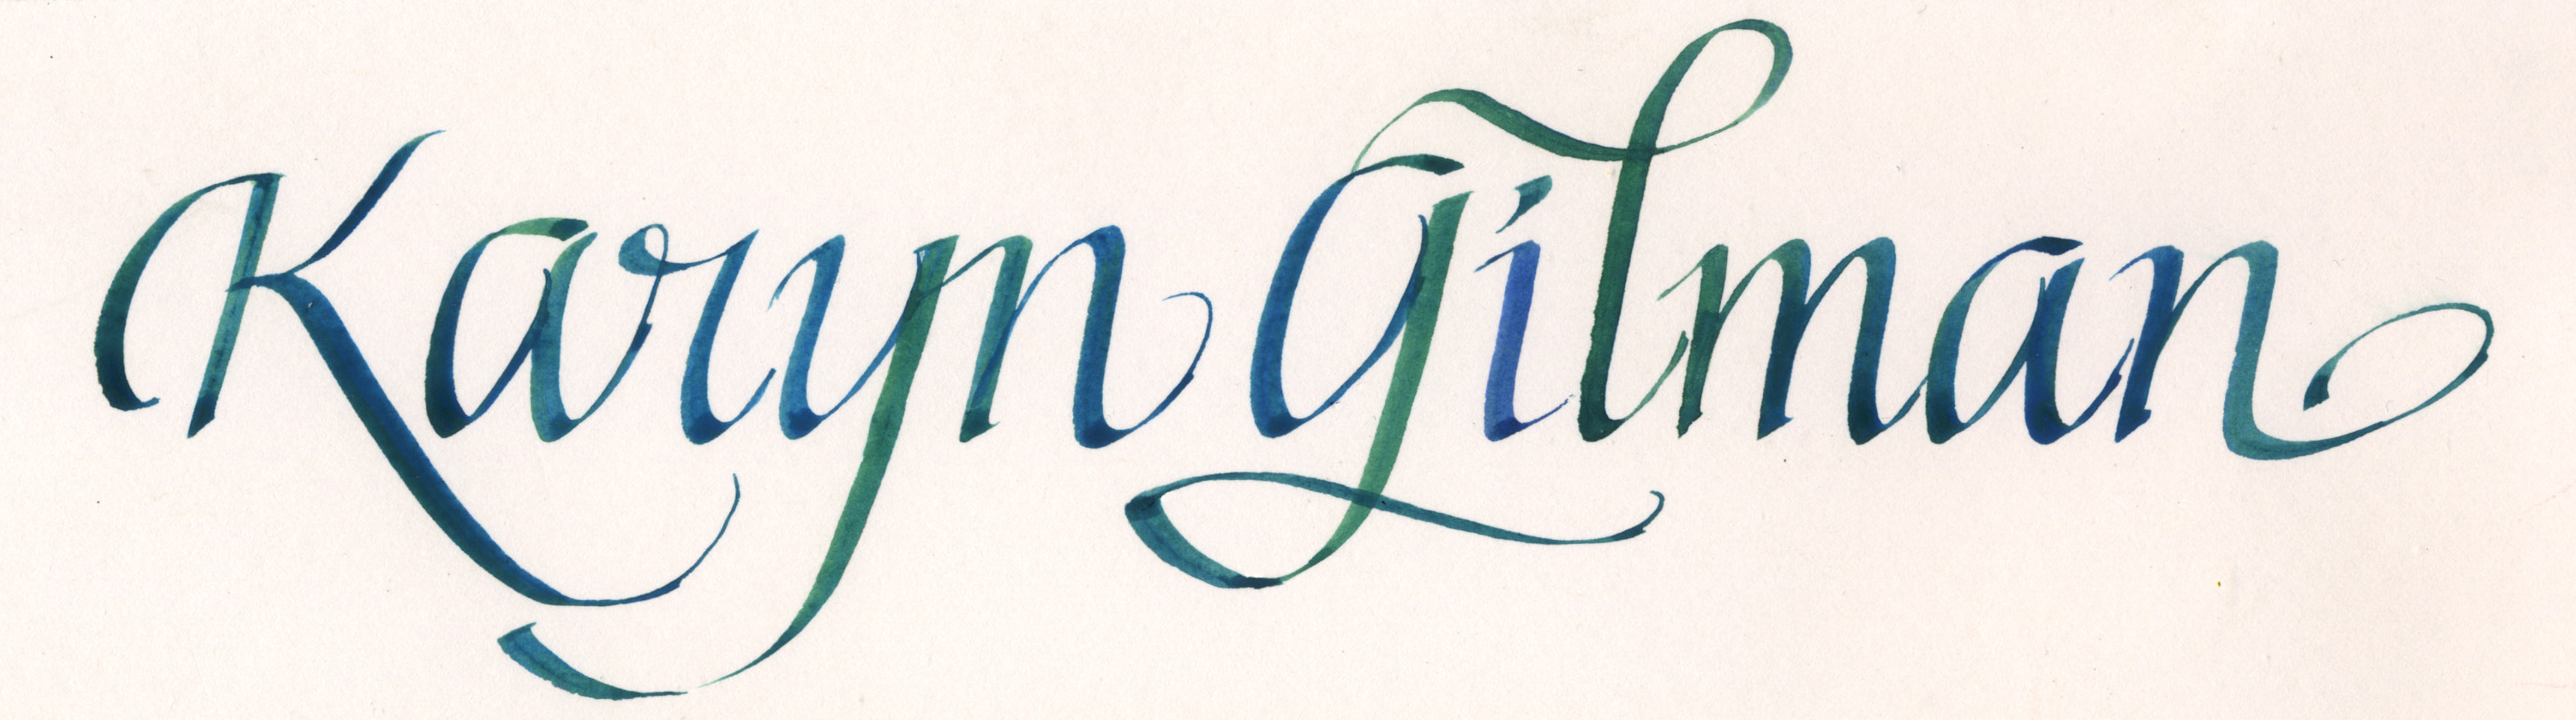 Calligraphy & Design BY KARYN LYNN GILMAN